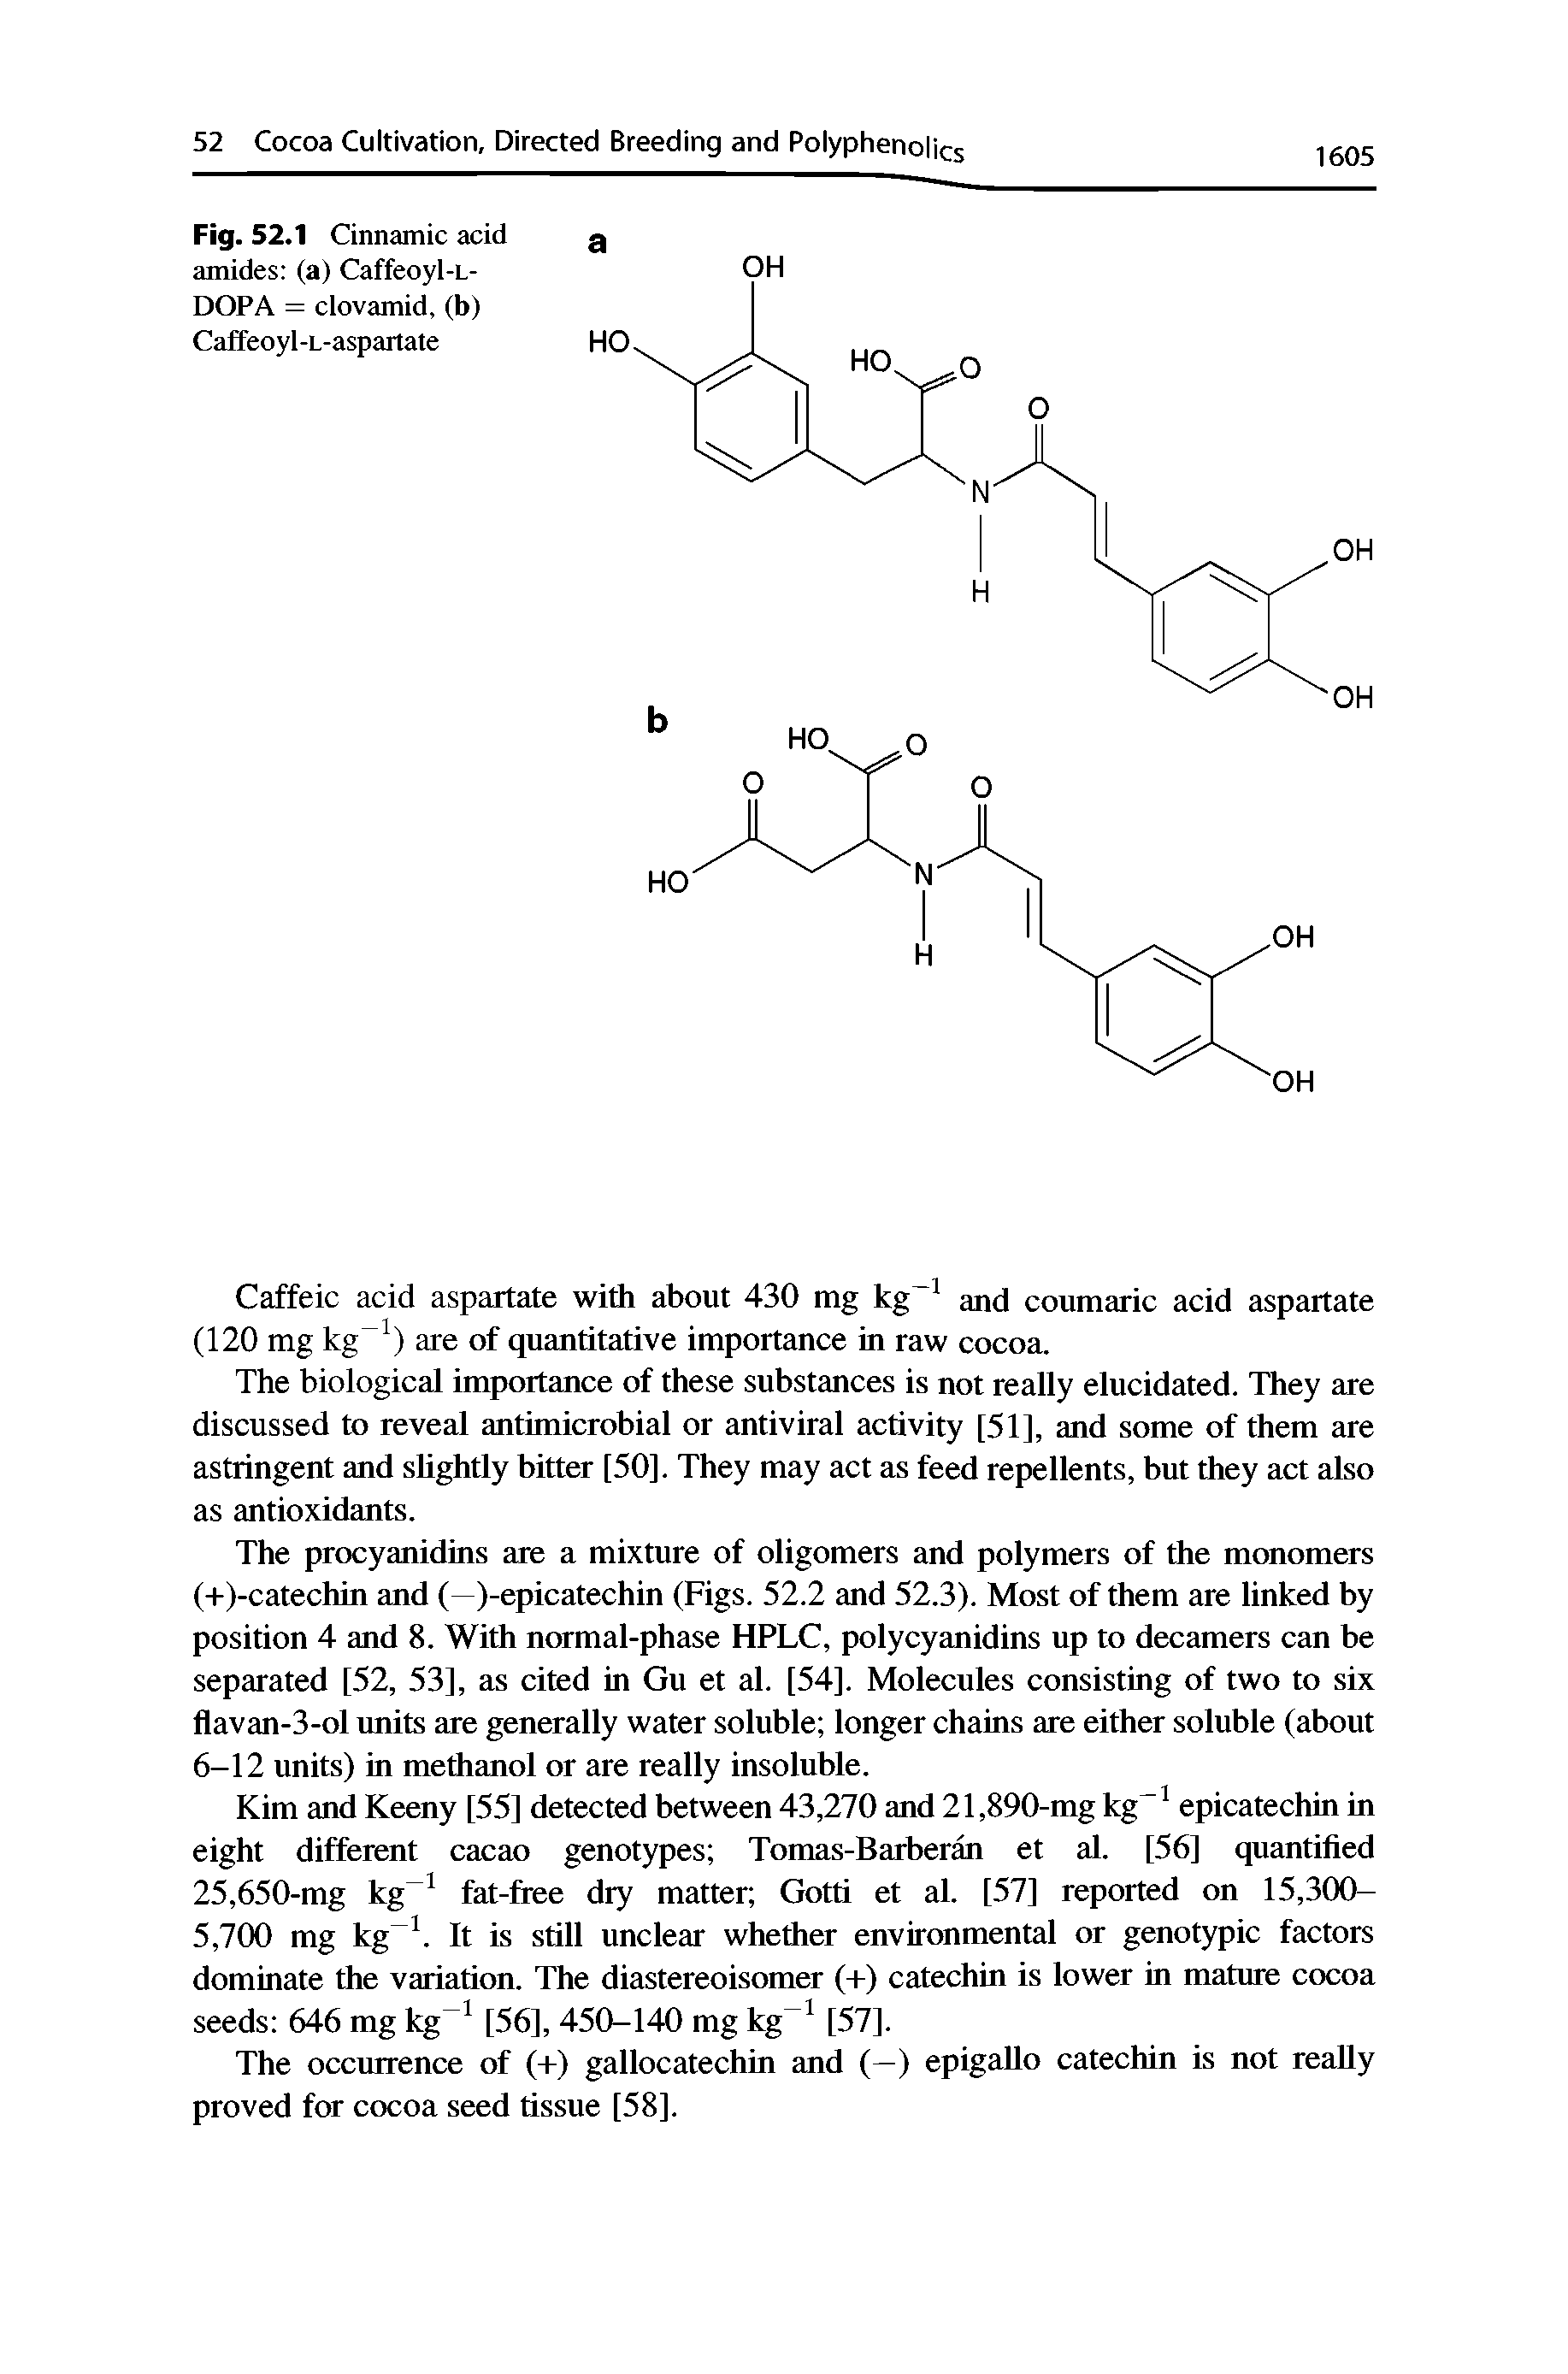 Fig. 52.1 Cinnamic acid amides (a) Caffeoyl-L-DOPA = clovamid, (b) Caffeoyl-L-aspartate...